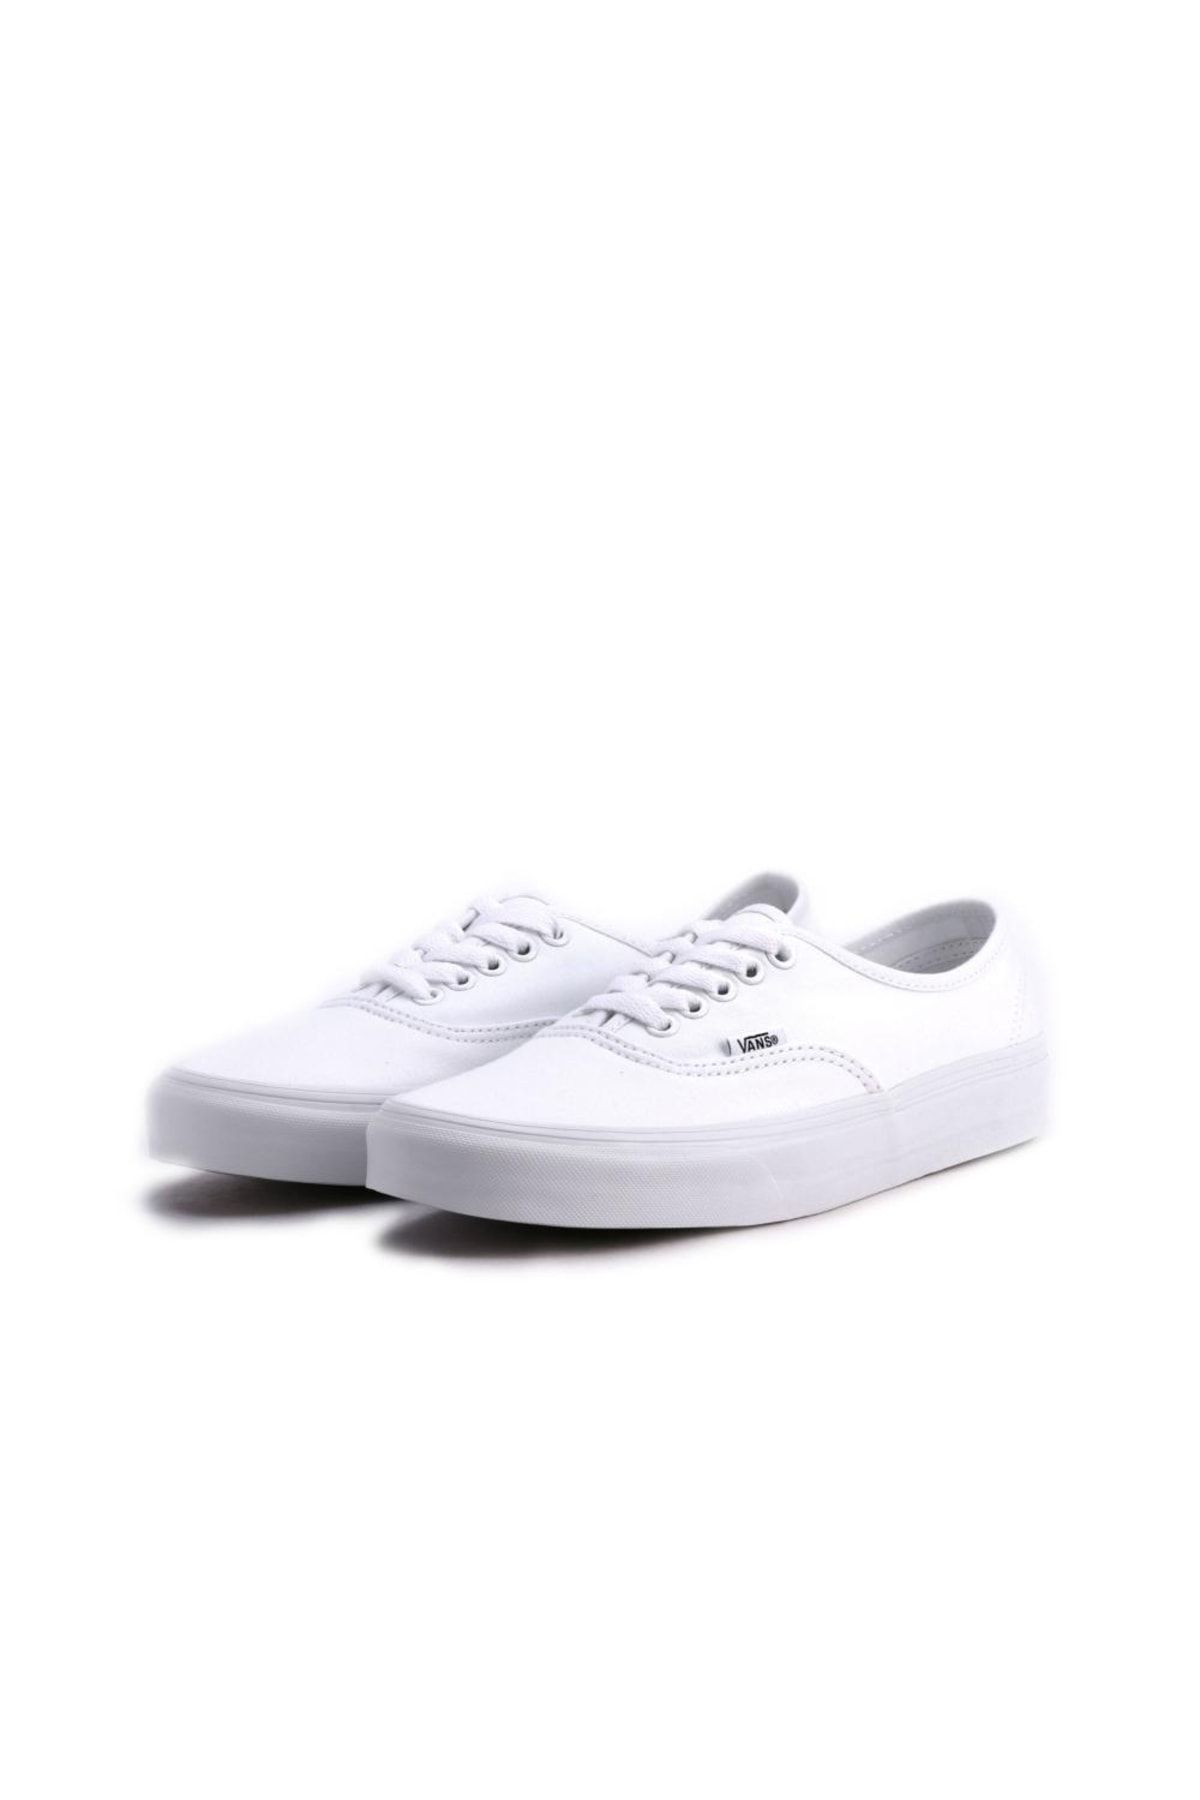 Vans Authentic Beyaz Unisex Sneaker Ayakkabı 100384777